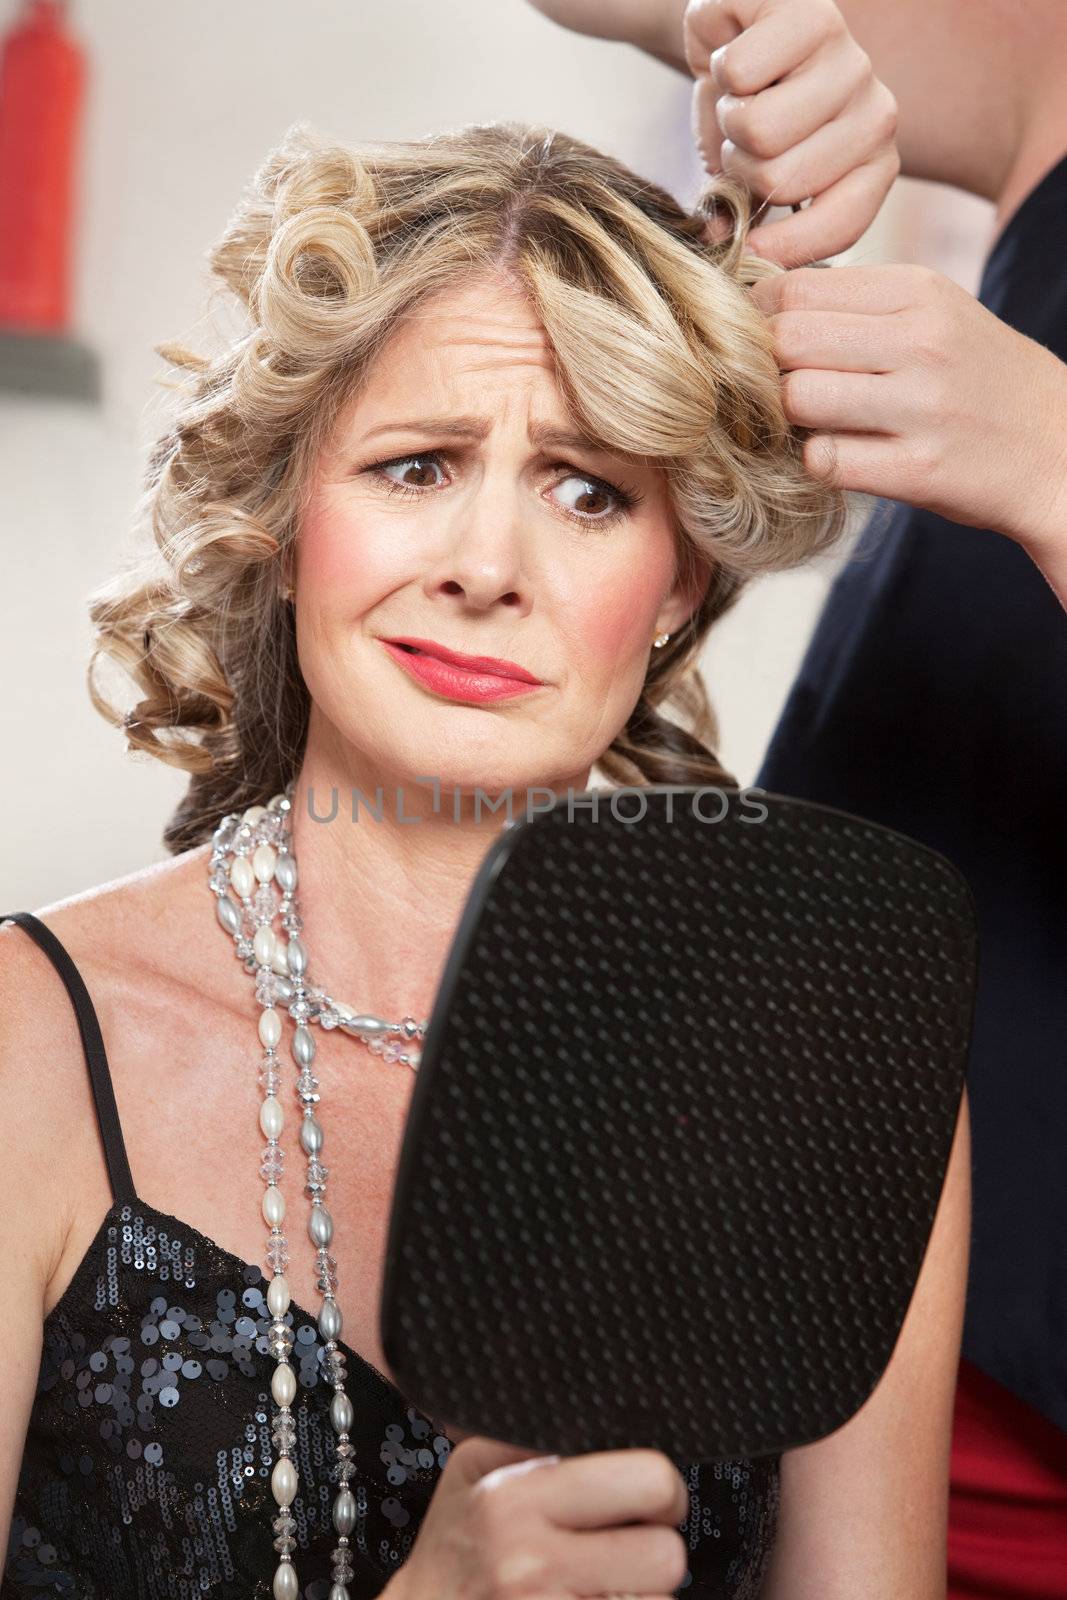 Dissatisfied Hair Salon Client by Creatista